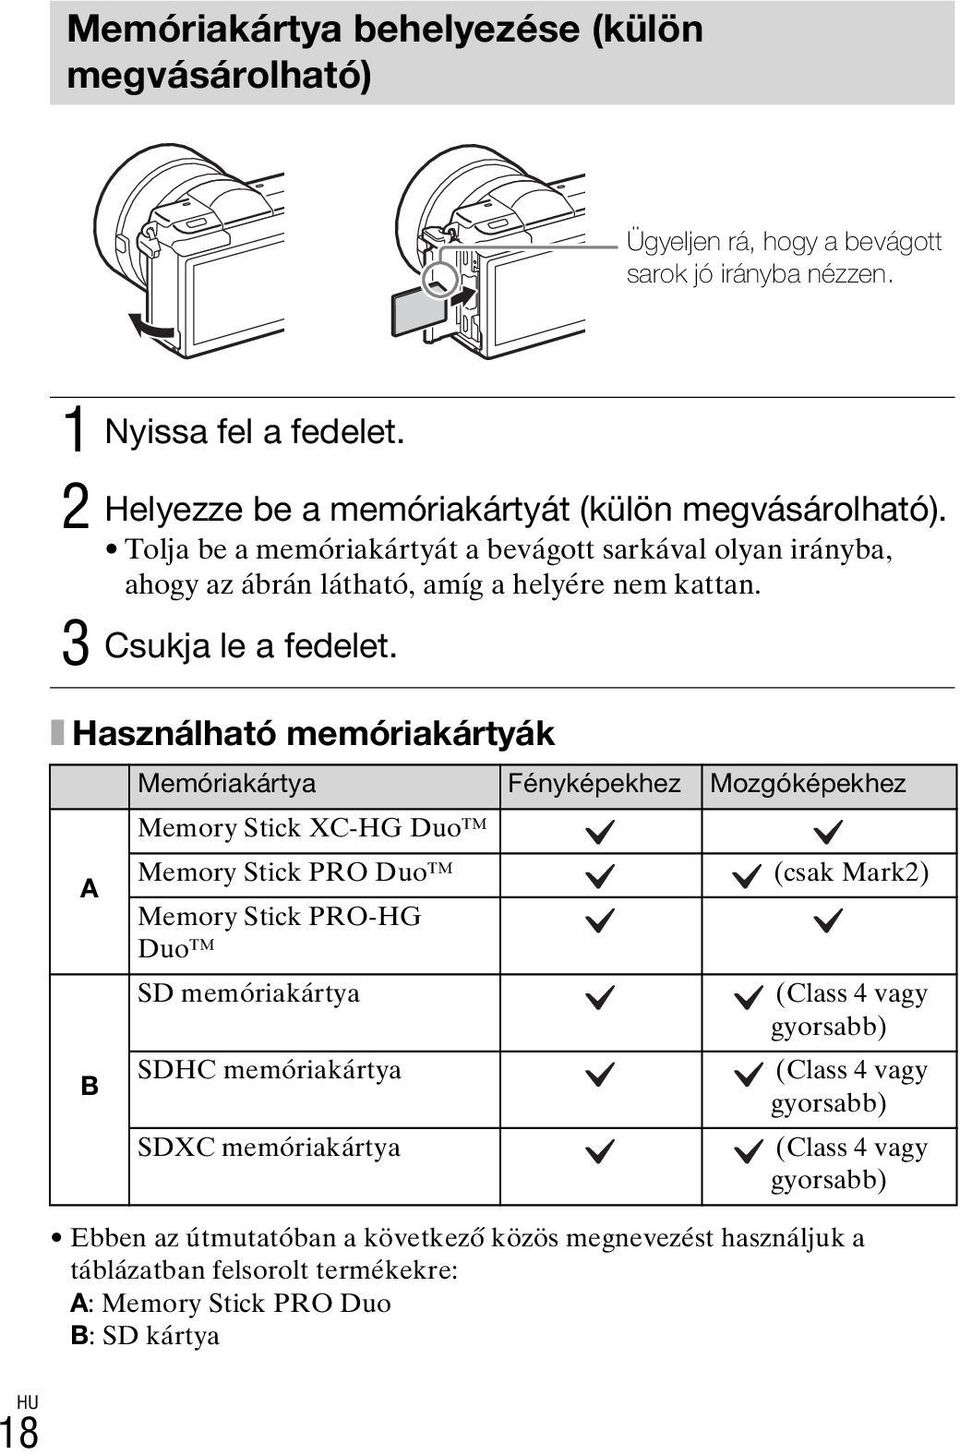 x Használható memóriakártyák A B Memóriakártya Fényképekhez Mozgóképekhez Memory Stick XC-HG Duo Memory Stick PRO Duo (csak Mark2) Memory Stick PRO-HG Duo SD memóriakártya (Class 4